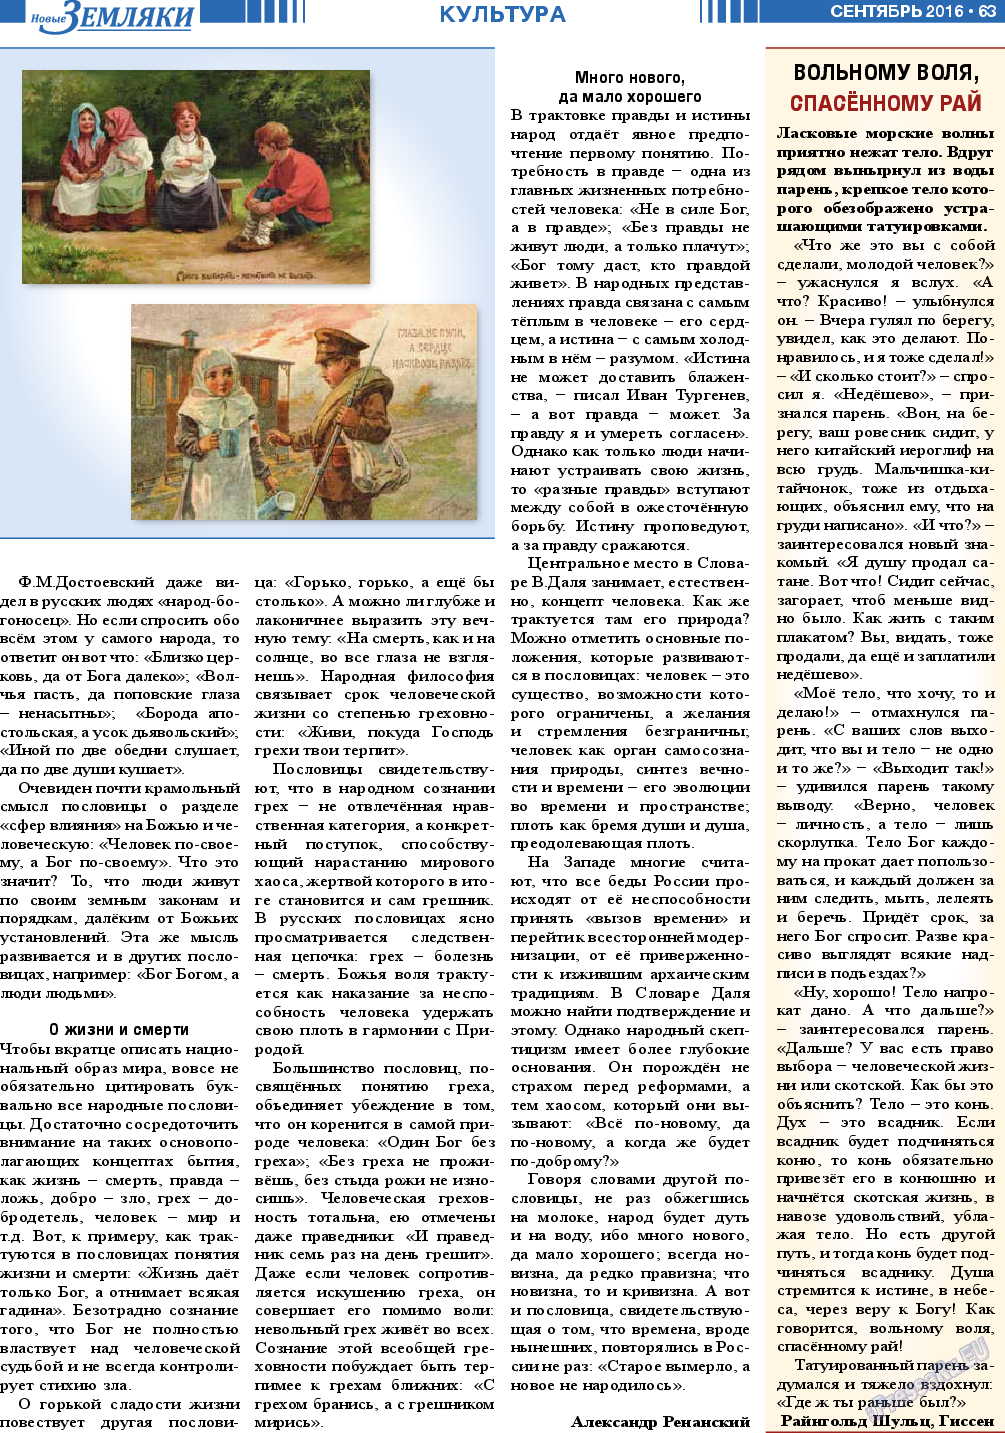 Новые Земляки (газета). 2016 год, номер 9, стр. 63